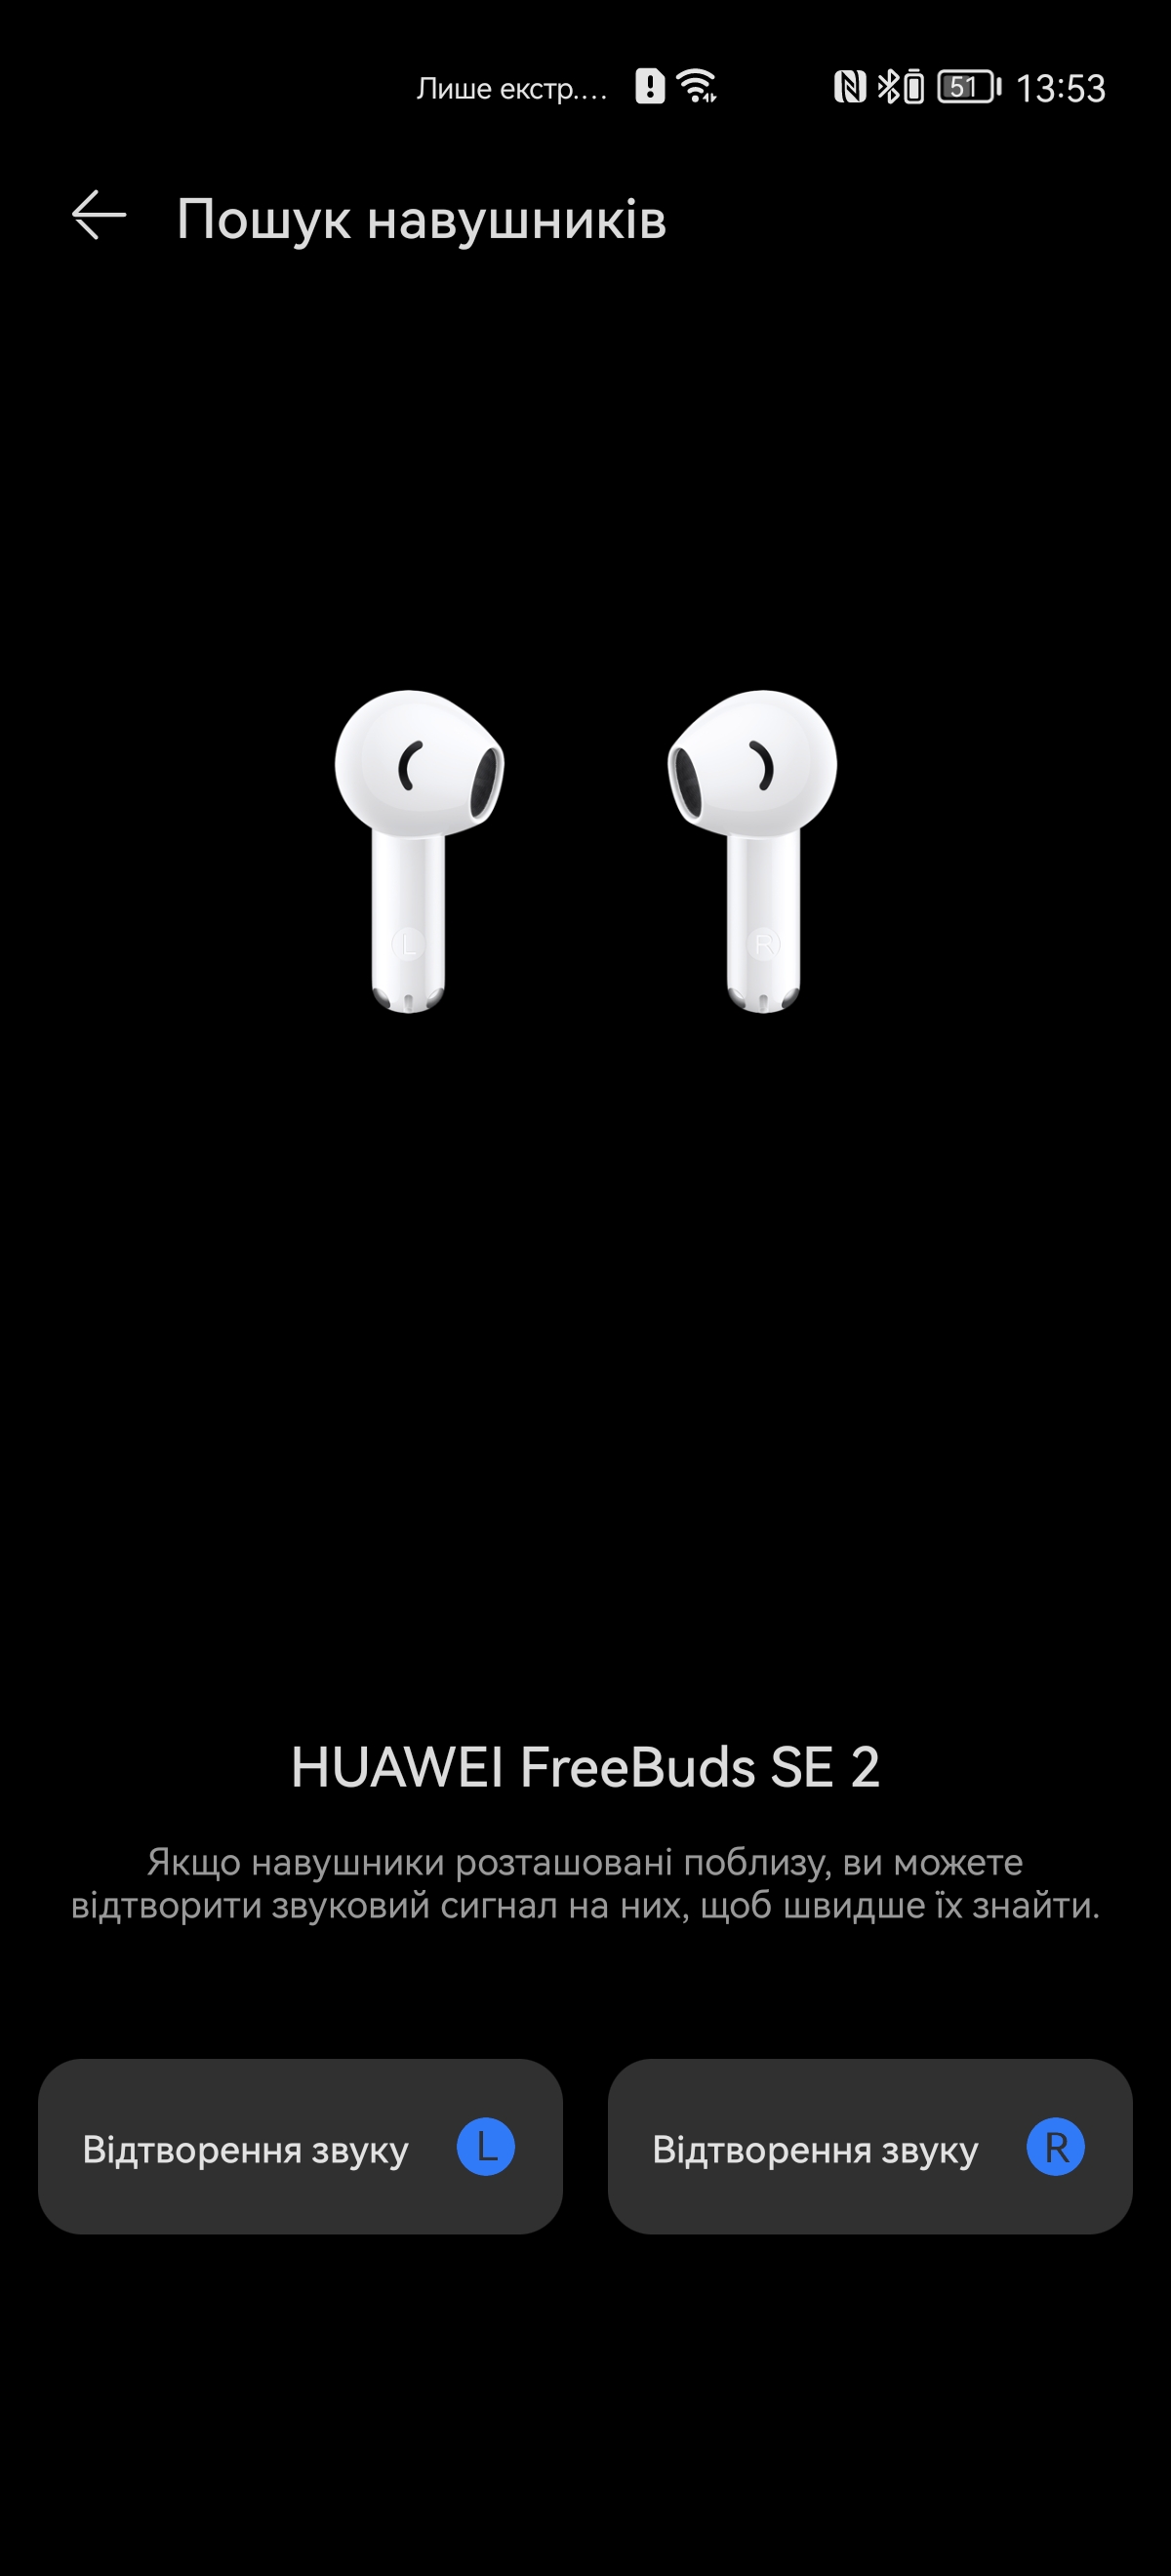 Huawei FreeBuds SE 2 TWS 6 Stunden Test: 4 Gramm Garantiert Kopfhörer Musik in